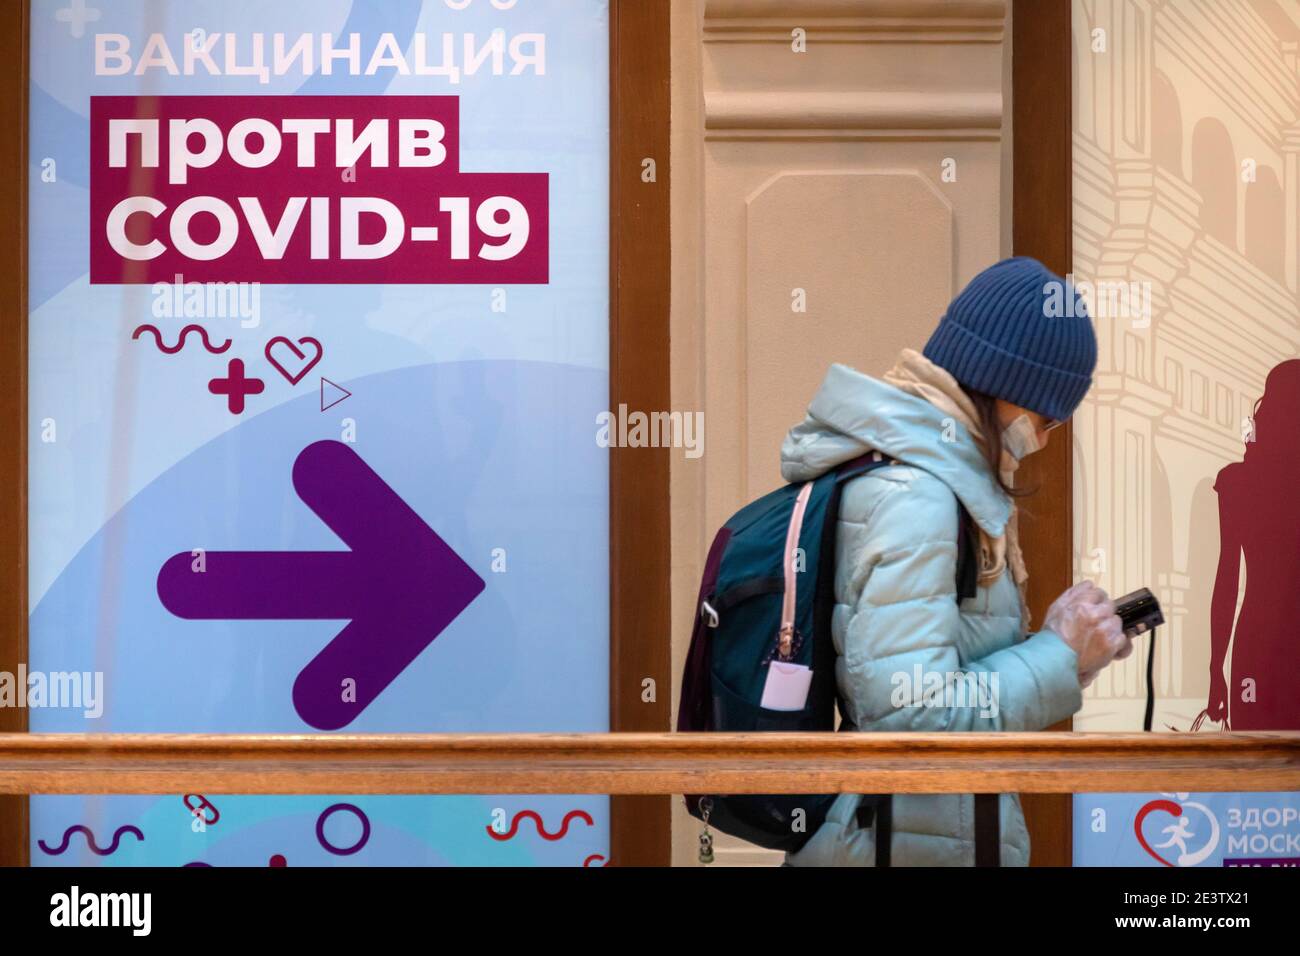 Moskau, Russland. 20. Januar 2021 Bürger mit Gesichtsmasken stehen in der Schlange vor einer mobilen Impfeinheit COVID-19 im KAUGUMMI-Kaufhaus im Zentrum von Moskau, Russland. Seit Januar 18 hat Russland mit dem Sputnik V-Impfstoff mit einer Massenimpfung gegen die neuartige Coronavirus-Infektion COVID-19 begonnen. Auf dem Banner steht: „COVID-19-Impfung“ Stockfoto